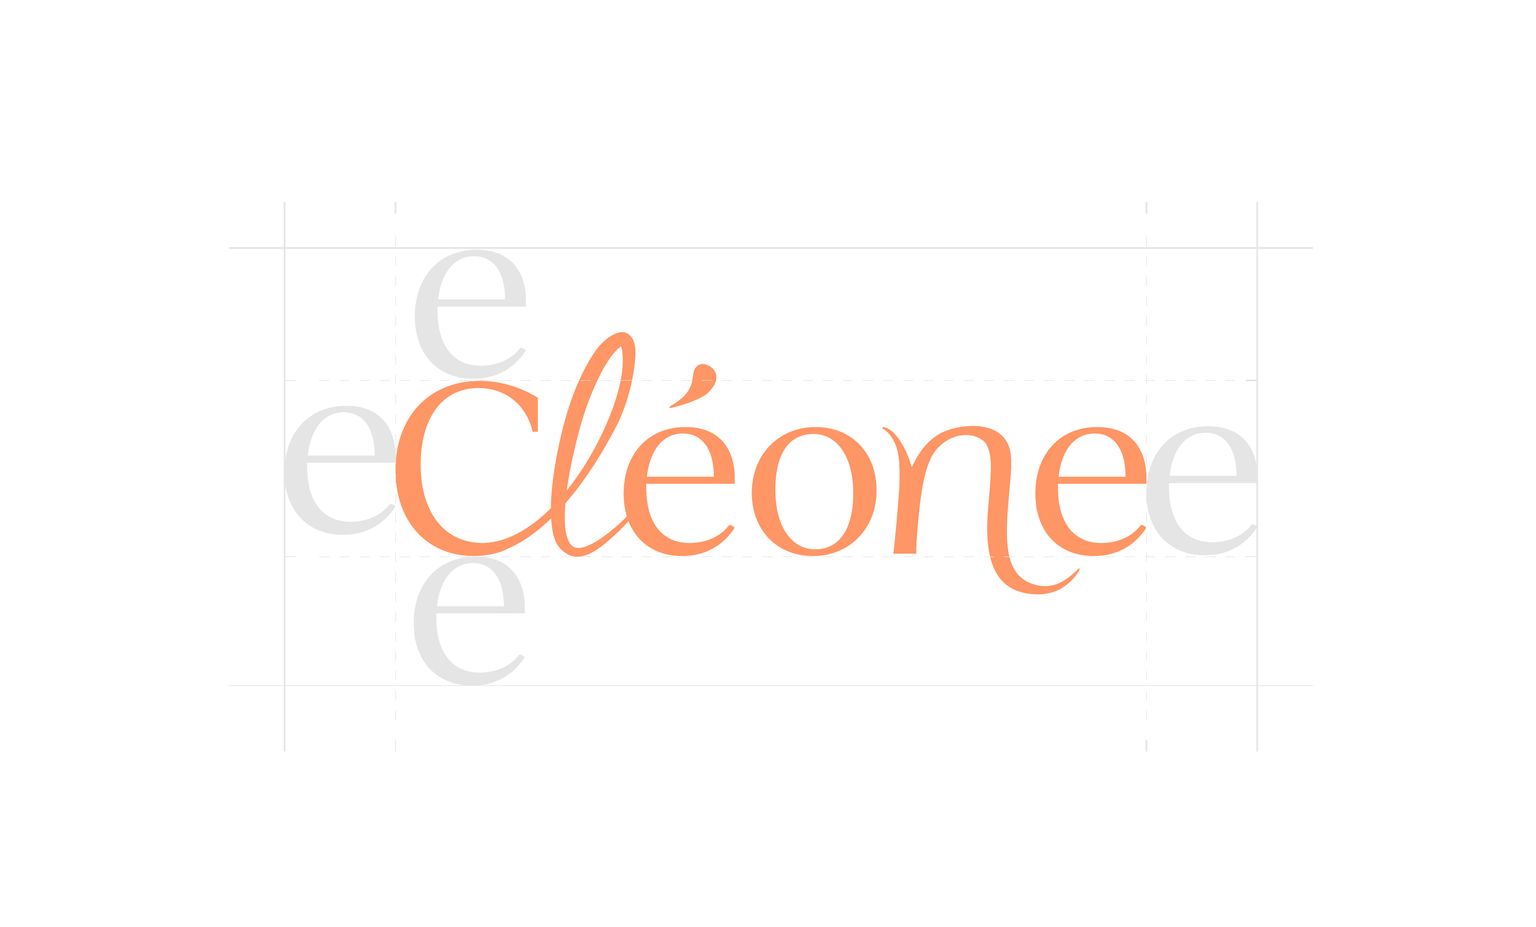 Conception logo cléone